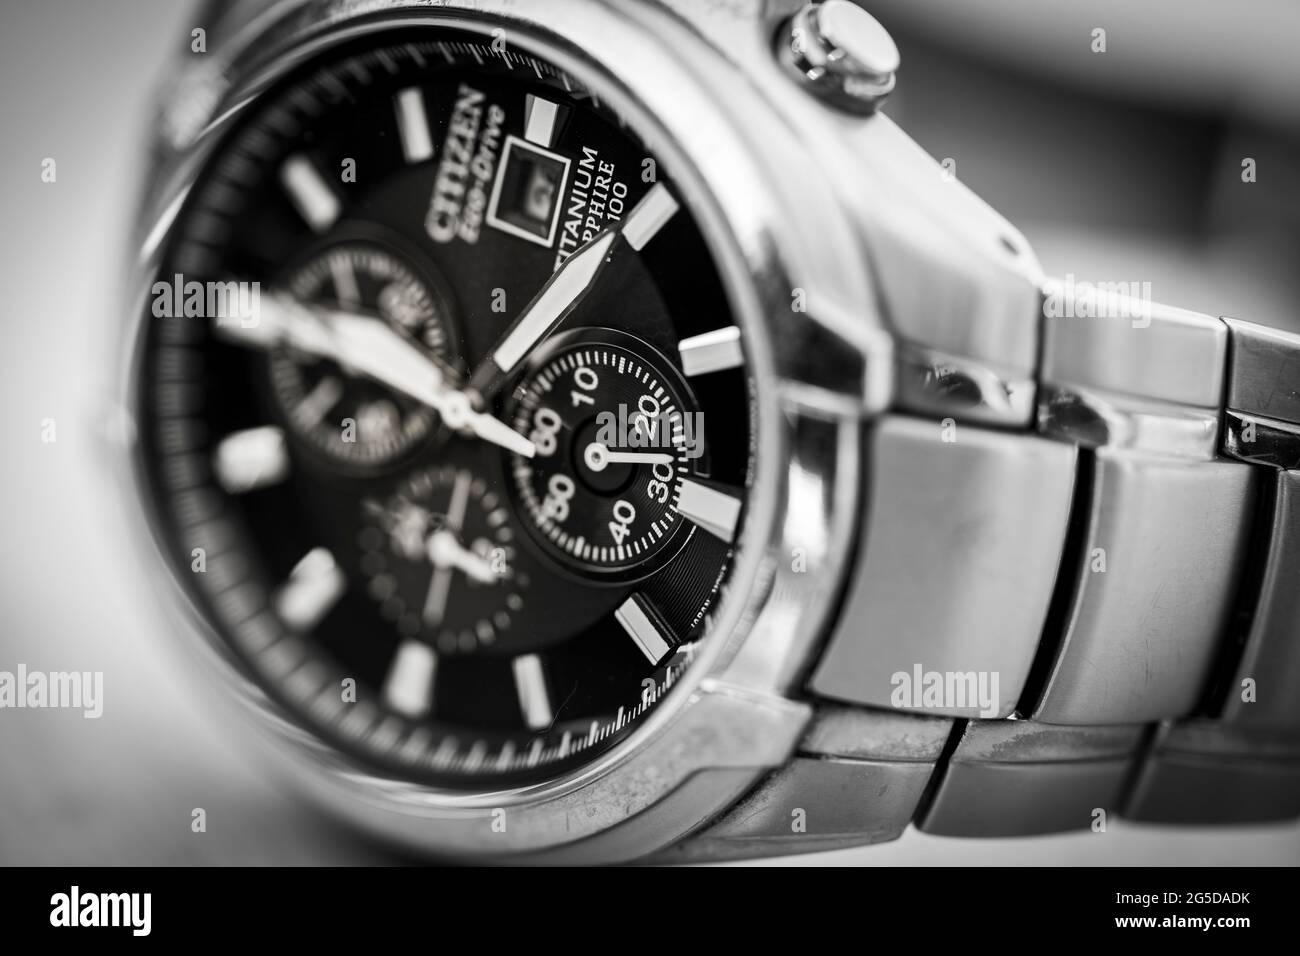 Gros plan noir et blanc monochrome d'une montre-bracelet homme solaire en titane et en métal Citizen Eco Drive montrant les mains de l'horloge et la sangle Banque D'Images